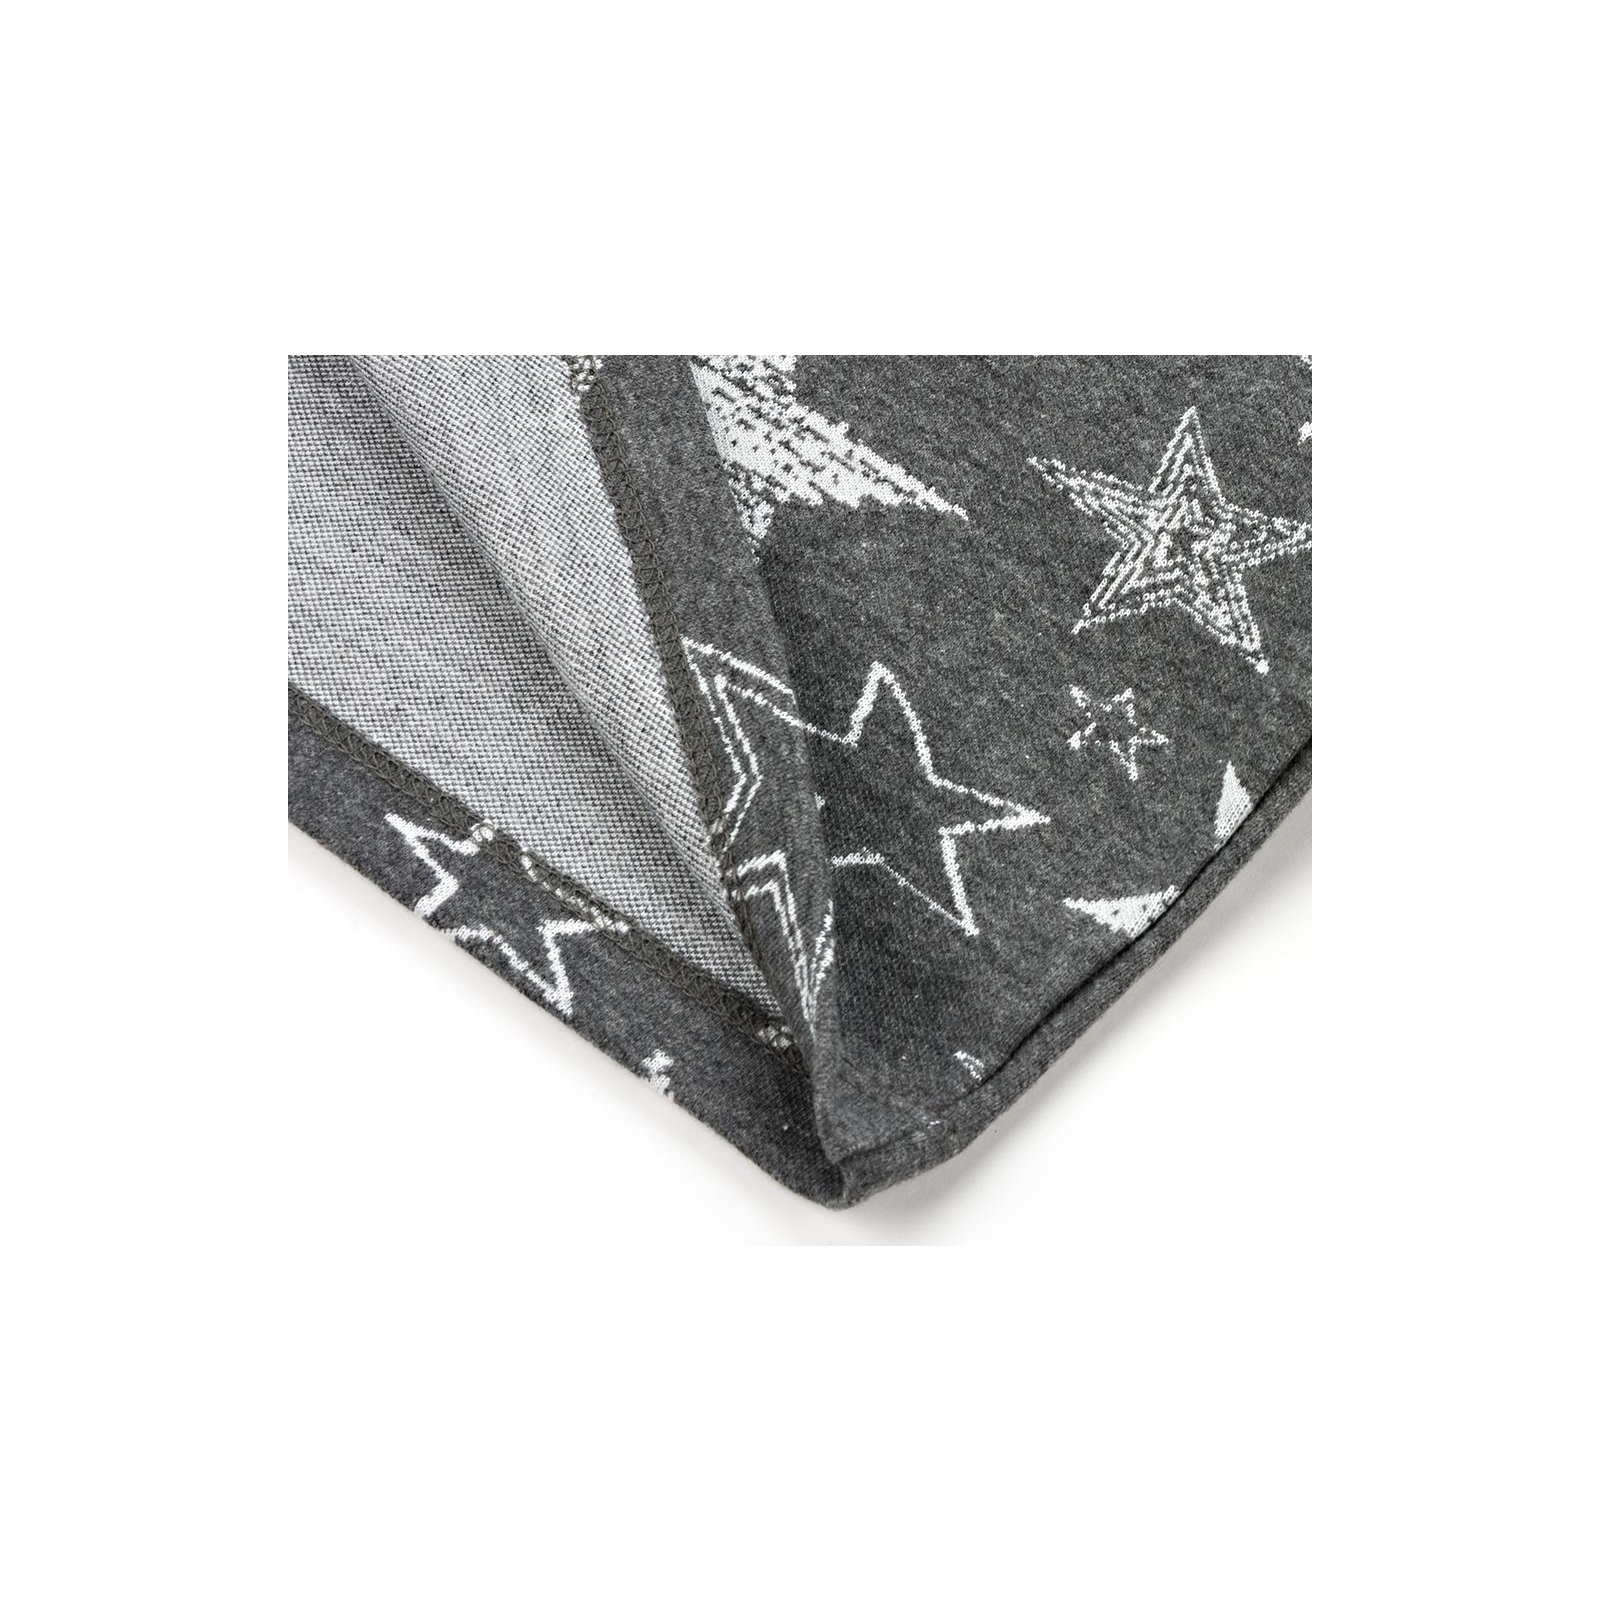 Платье Breeze со звездочками (11580-152G-gray) изображение 7